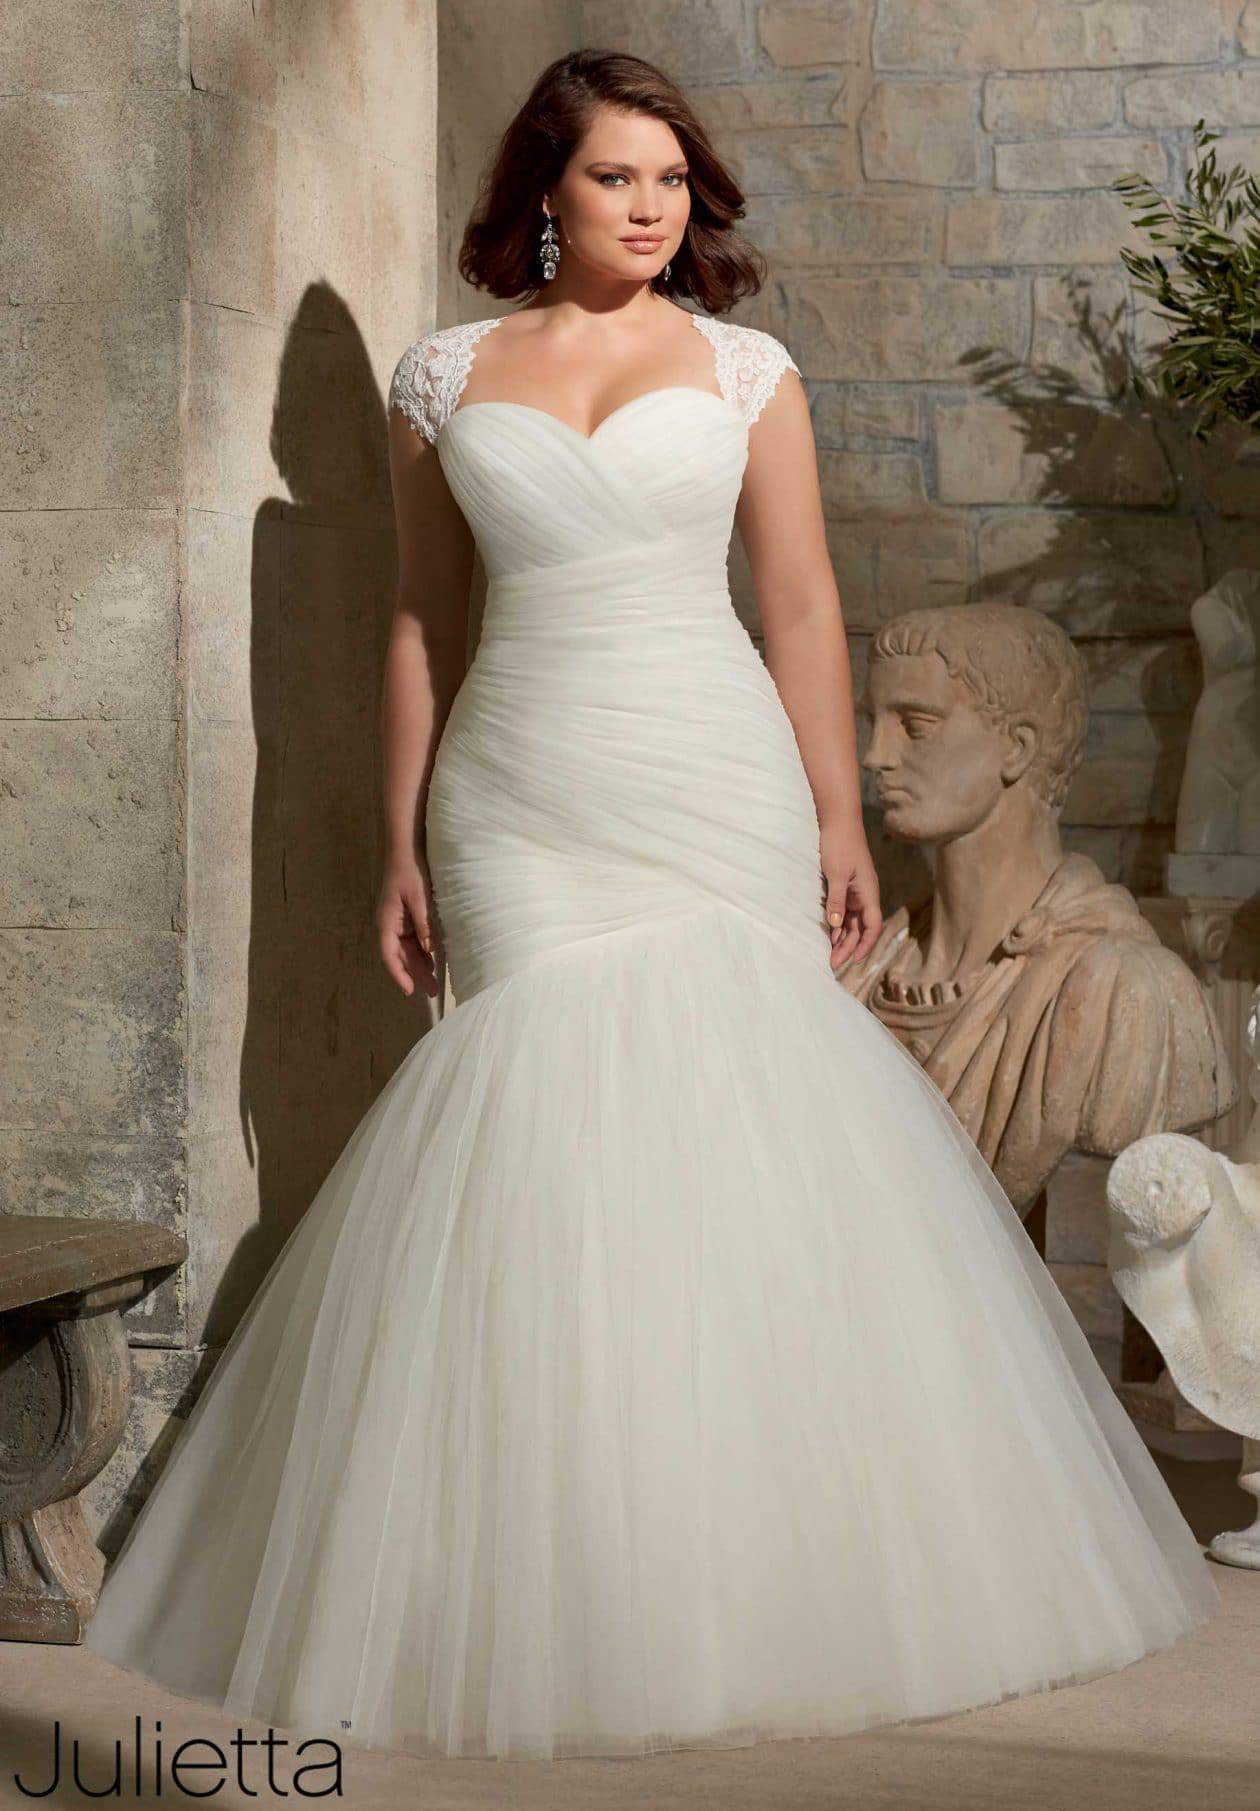 Curvique Bridal Boutique Mori Lee Plus Size Wedding Dress